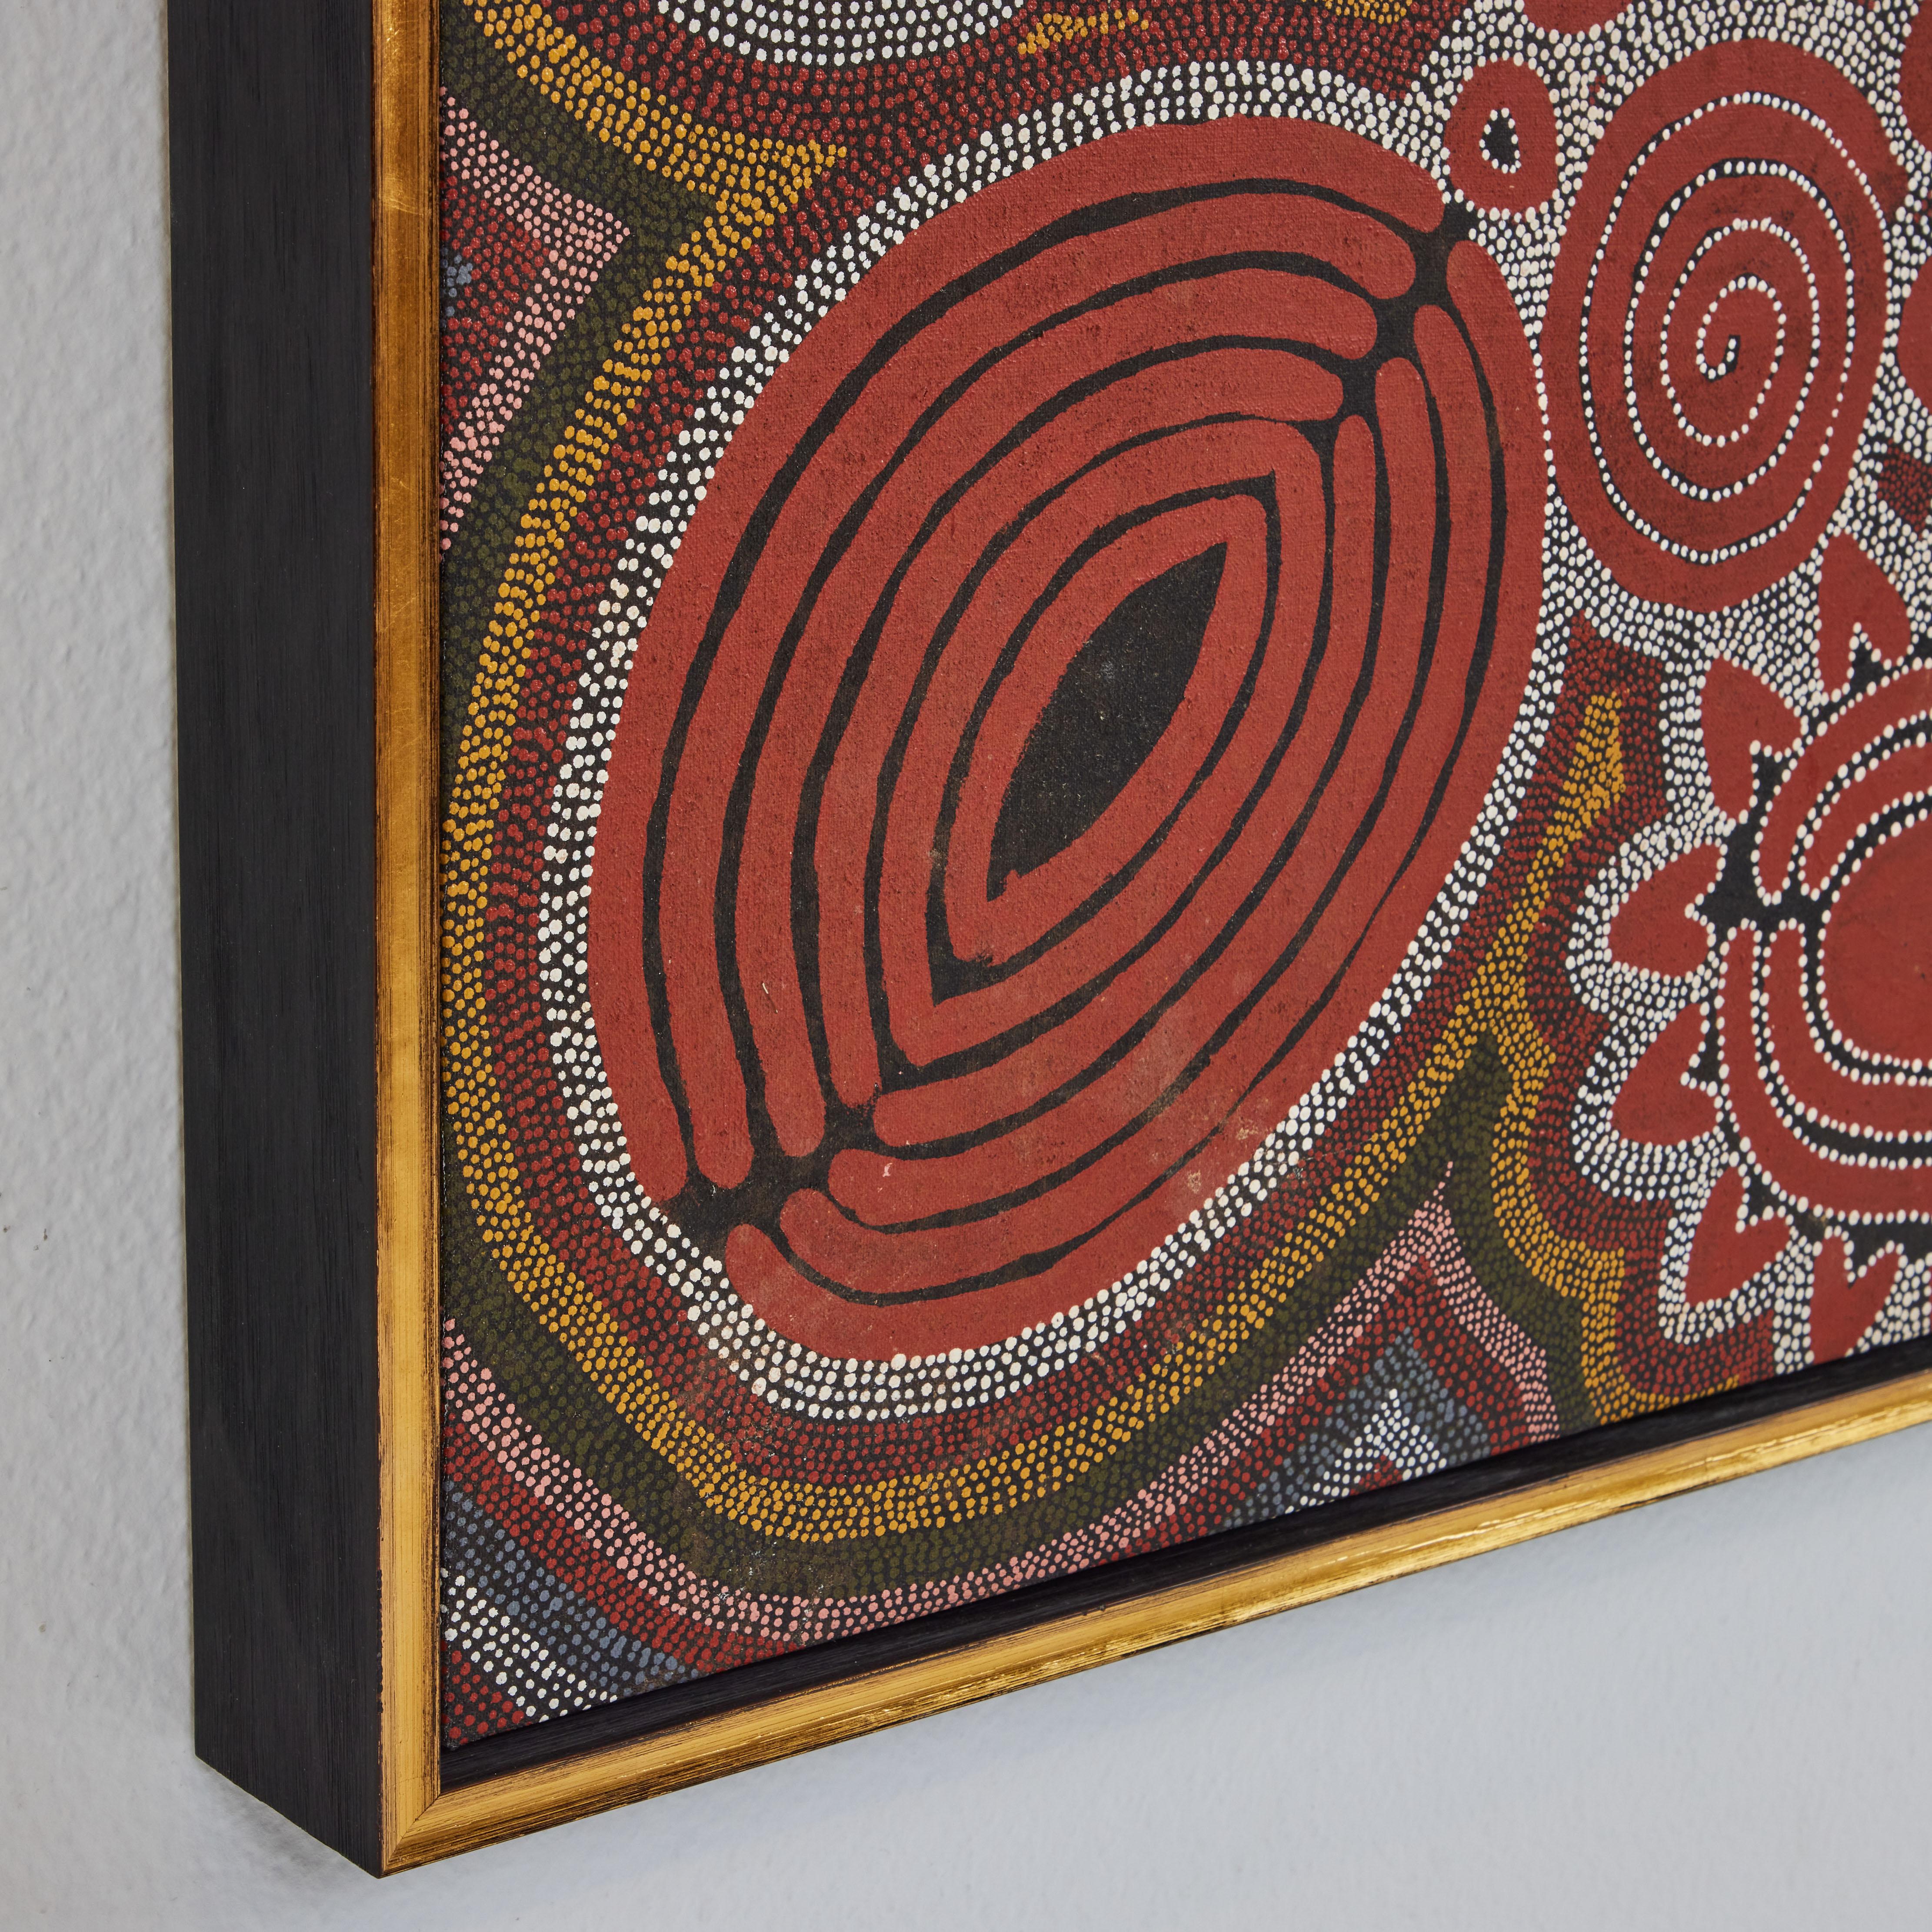 Hand-Painted Aboriginal Jukurrpa by Dorrie Petyarre